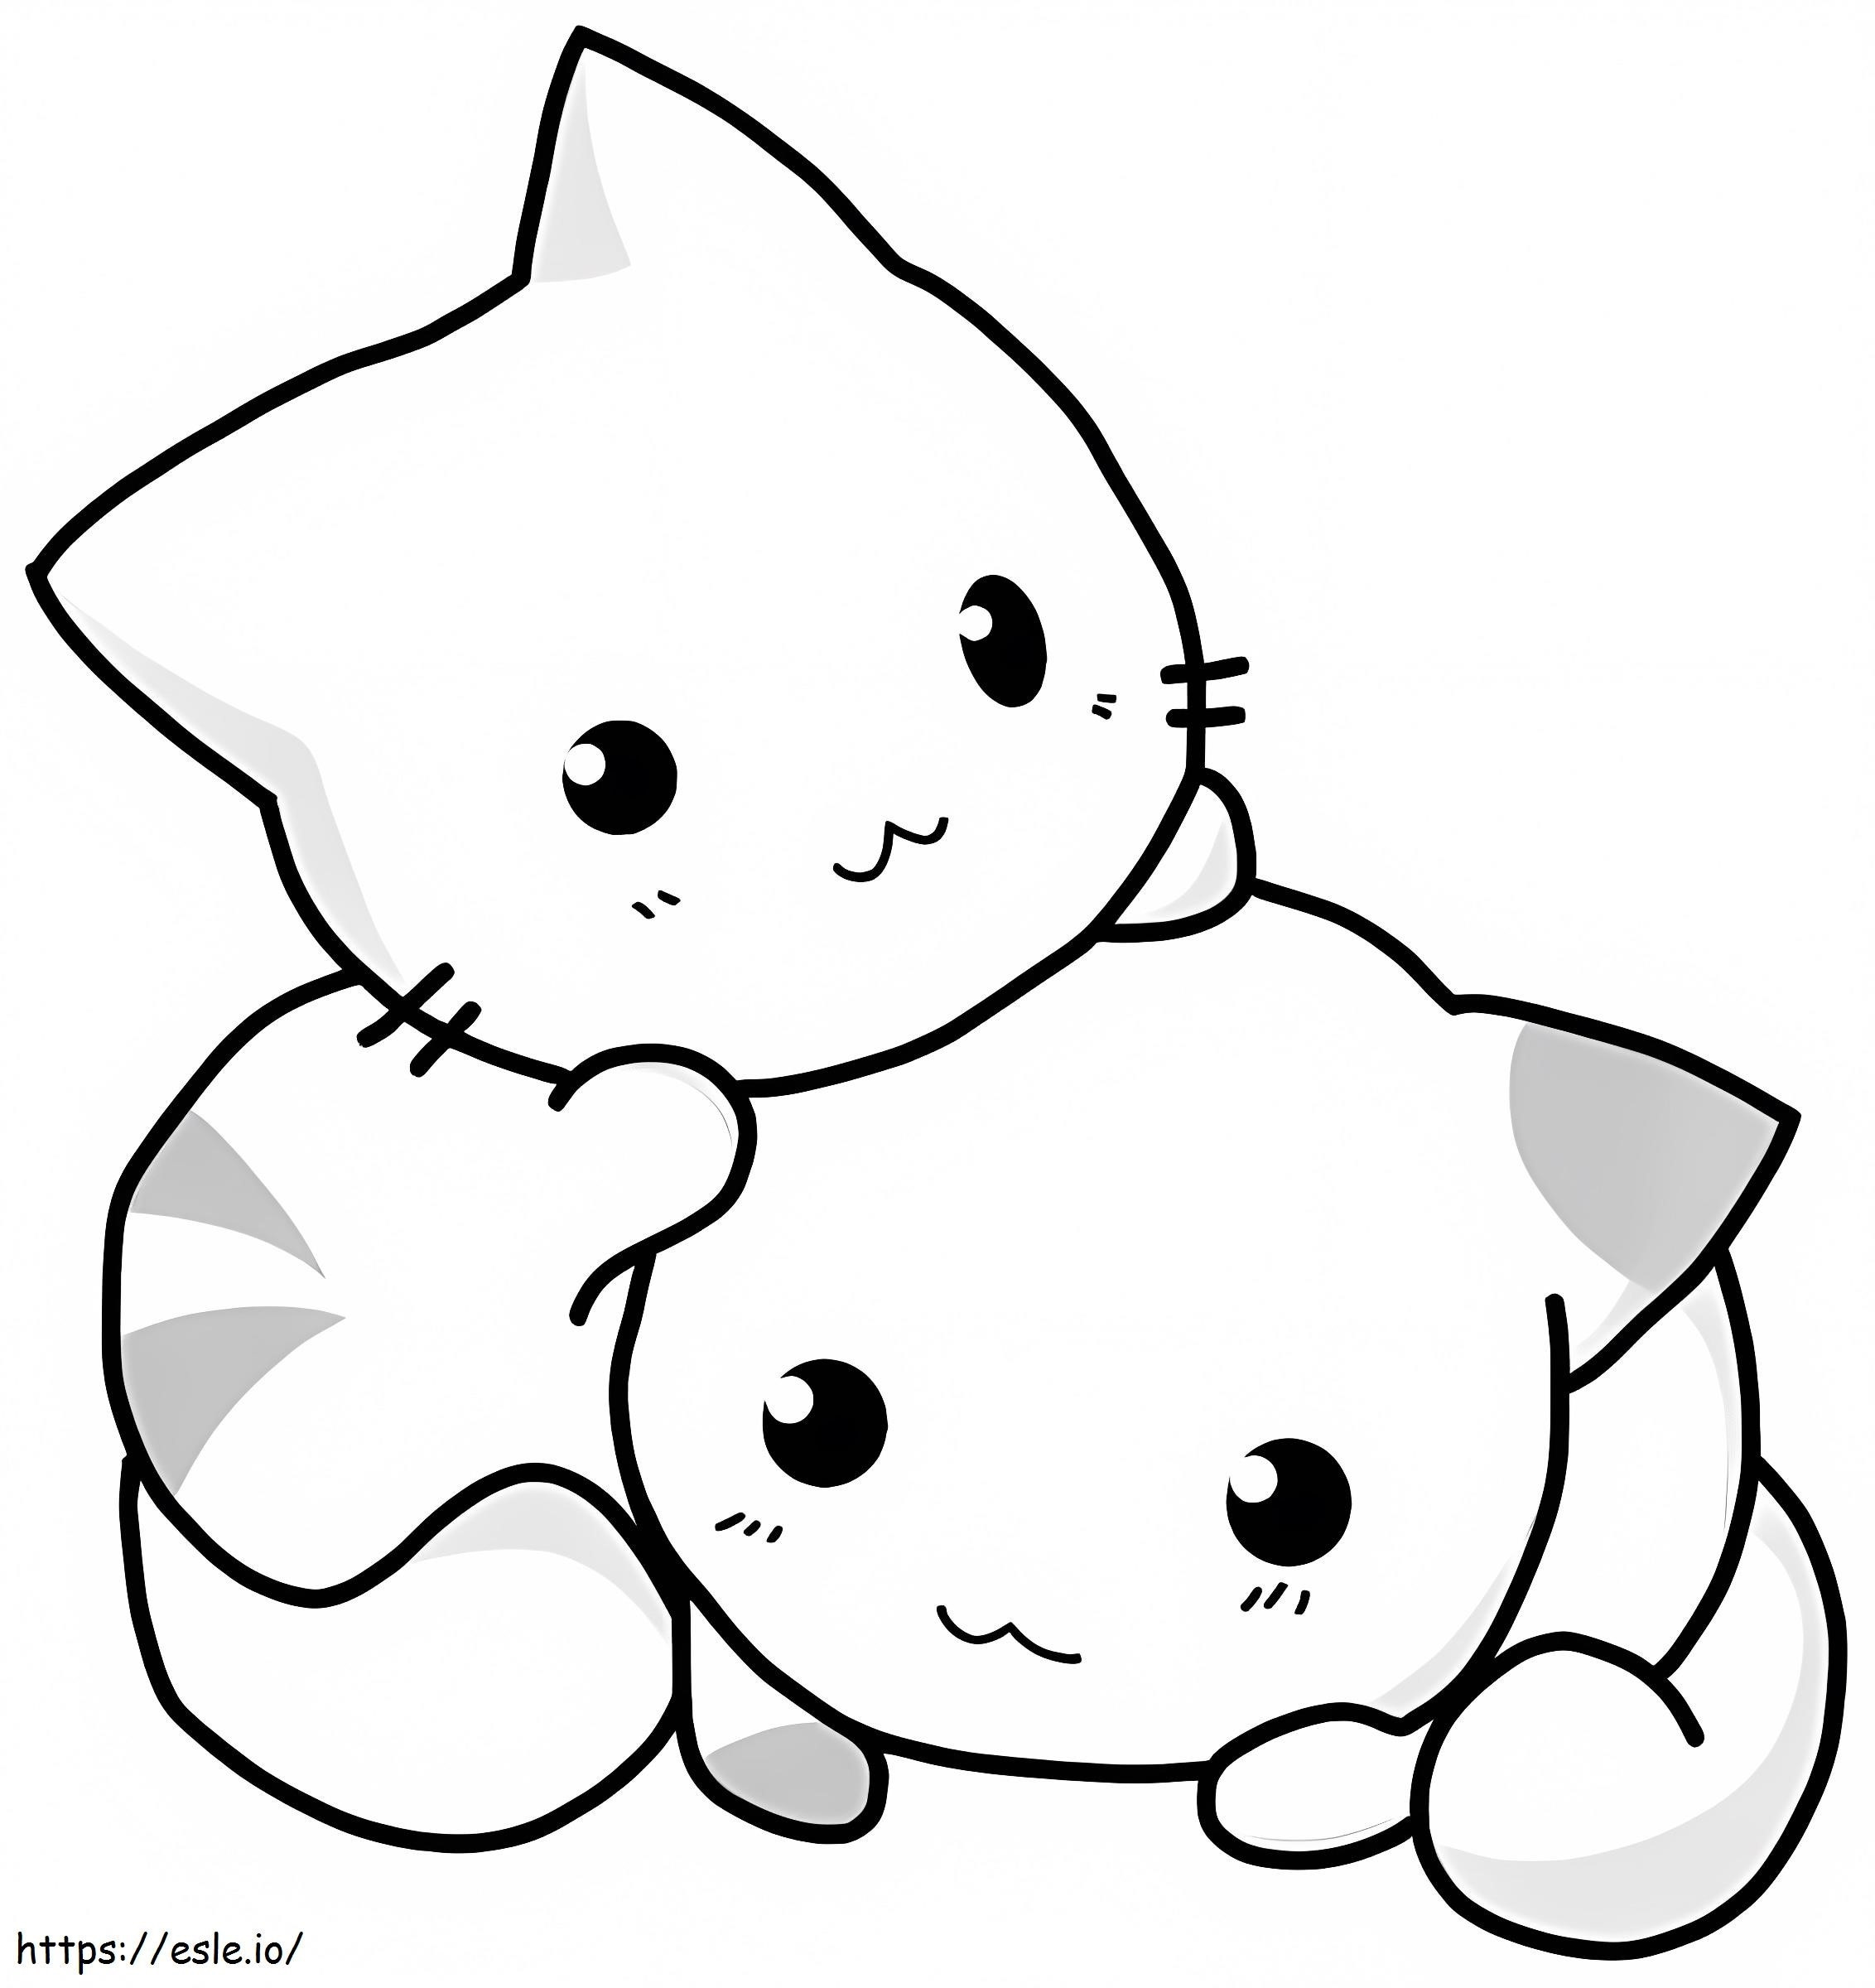 Zwei Kawaii-Kätzchen ausmalbilder